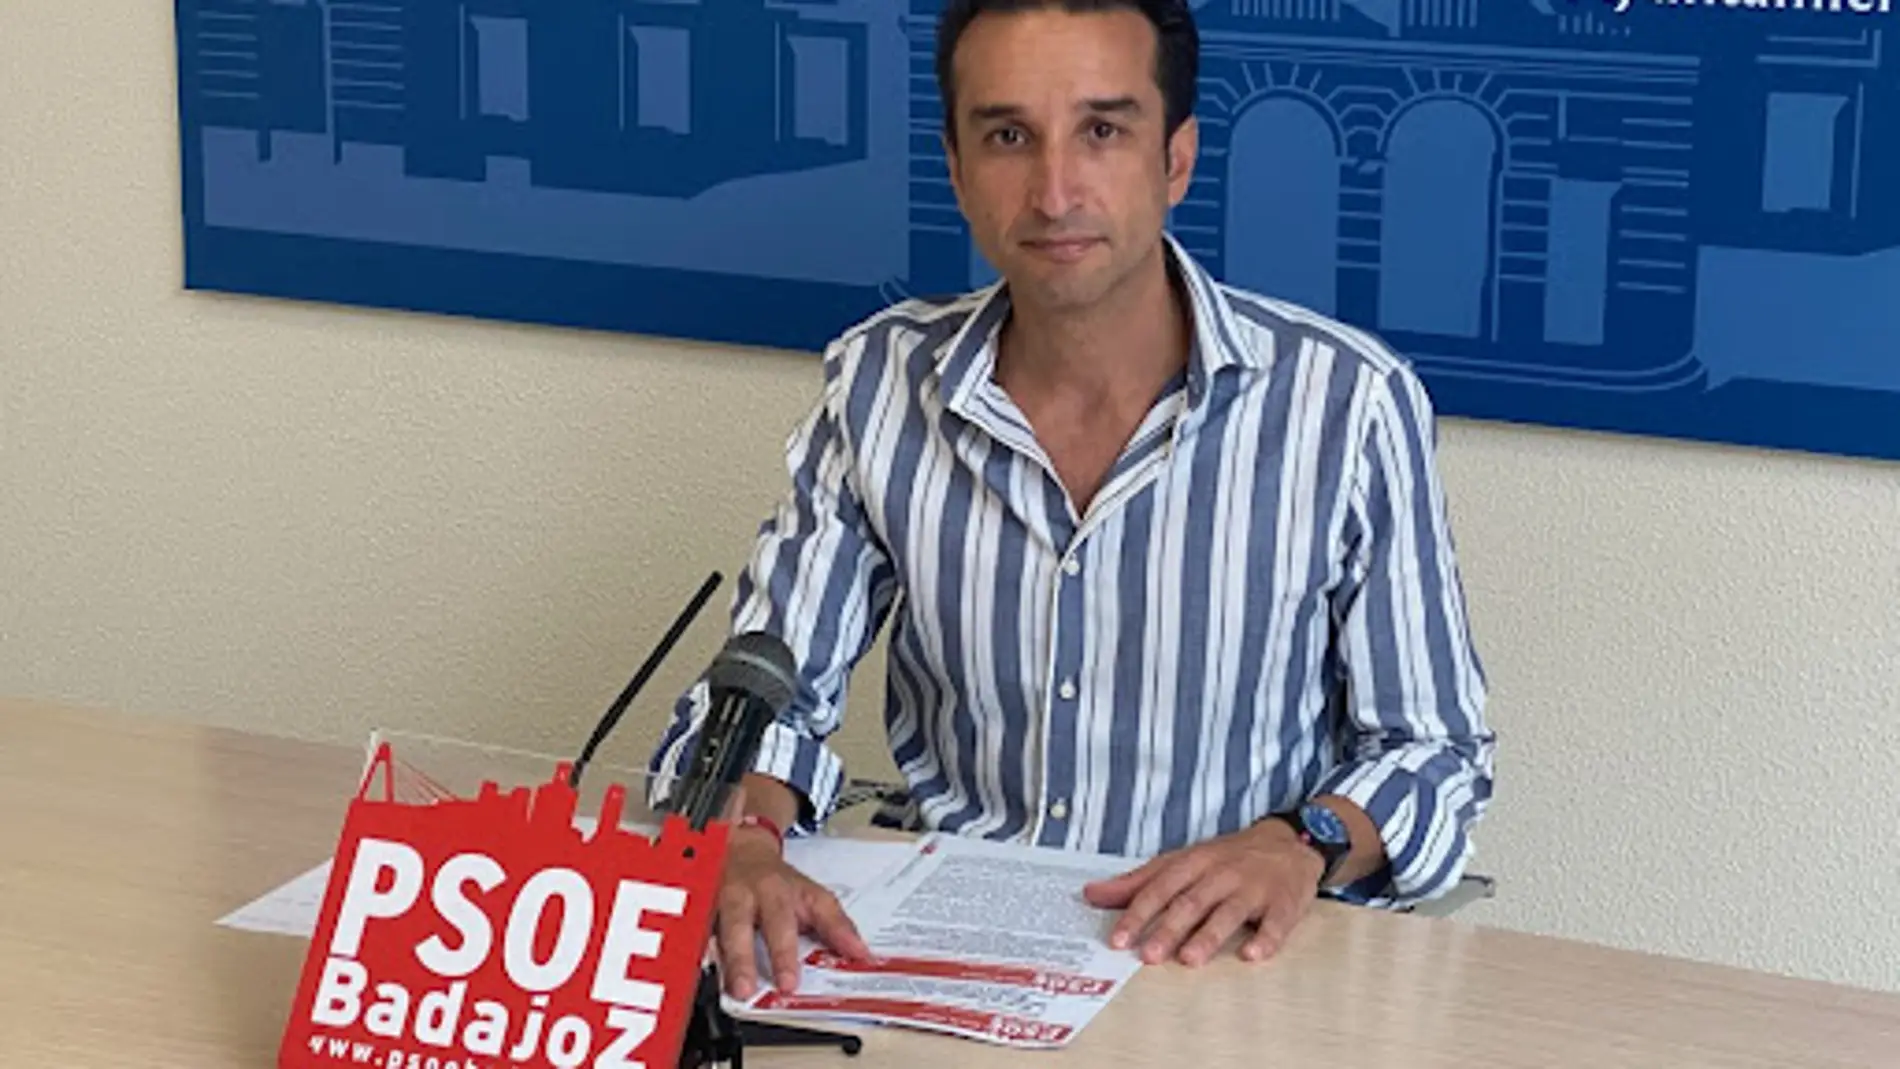 El PSOE de Badajoz tacha la carta de Limpieza de "un auténtico despropósito medio ambiental"